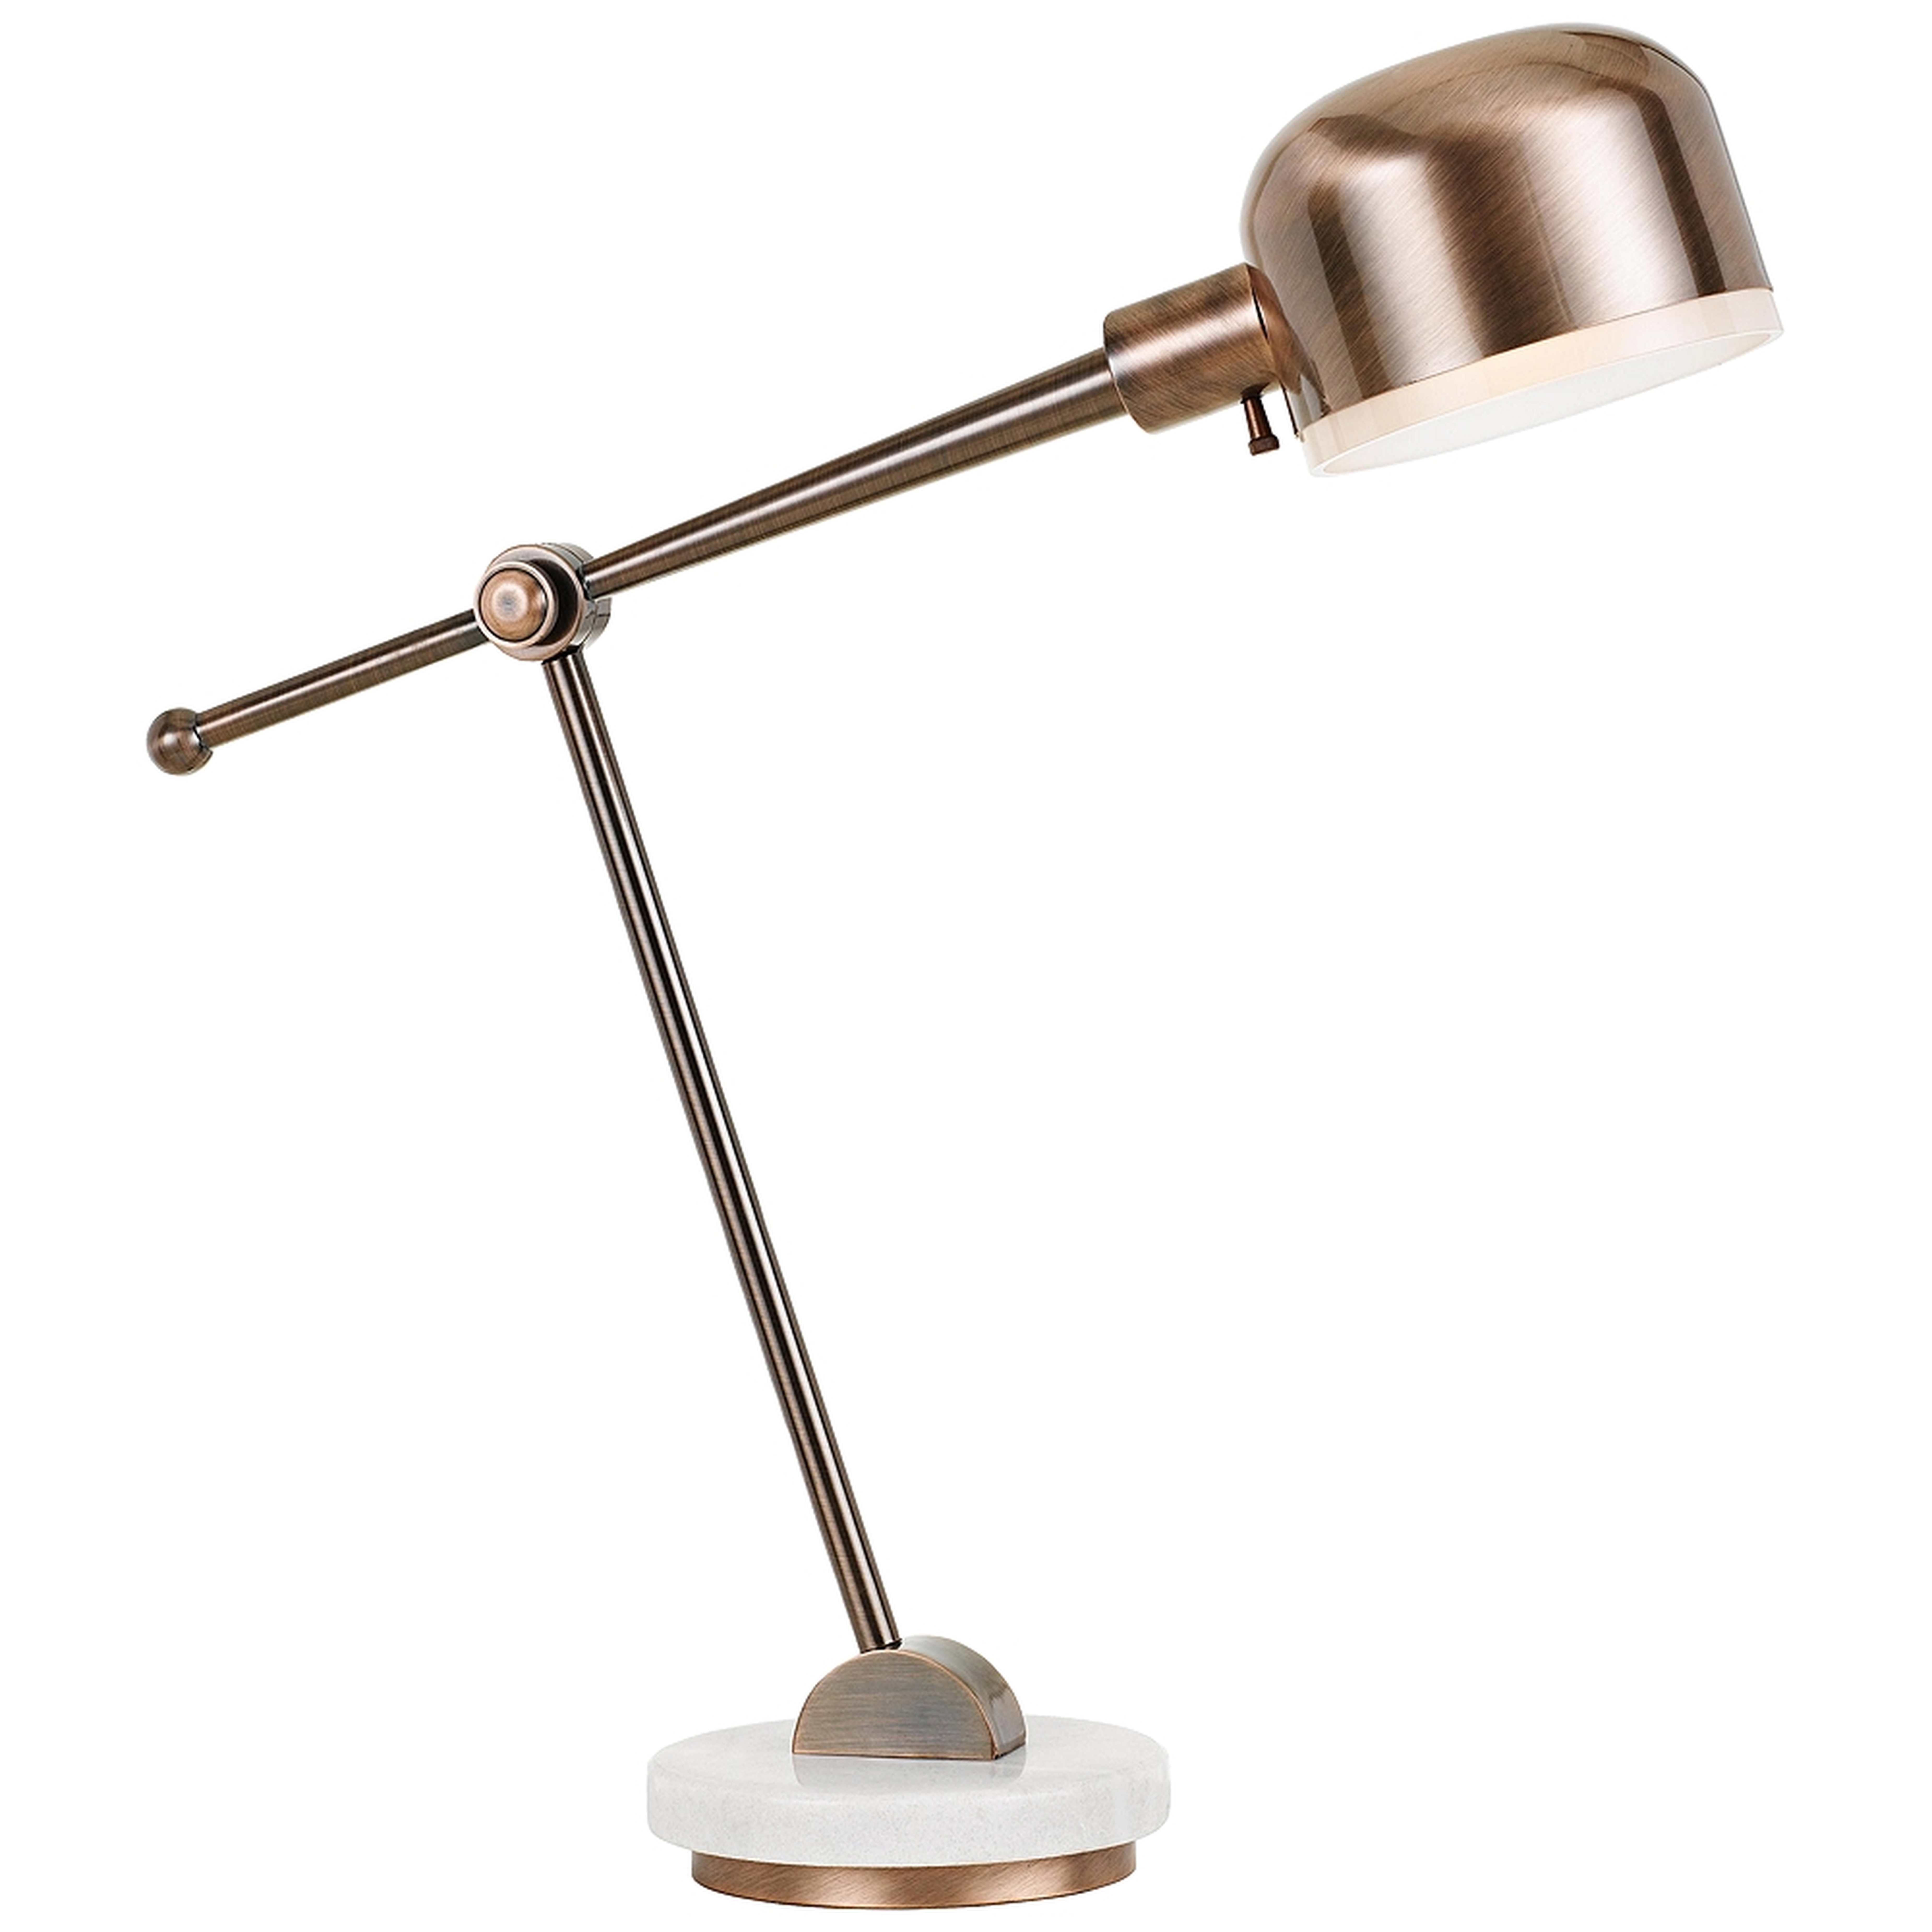 Allendale Copper Metal Adjustable Desk Lamp - Style # 40C80 - Lamps Plus